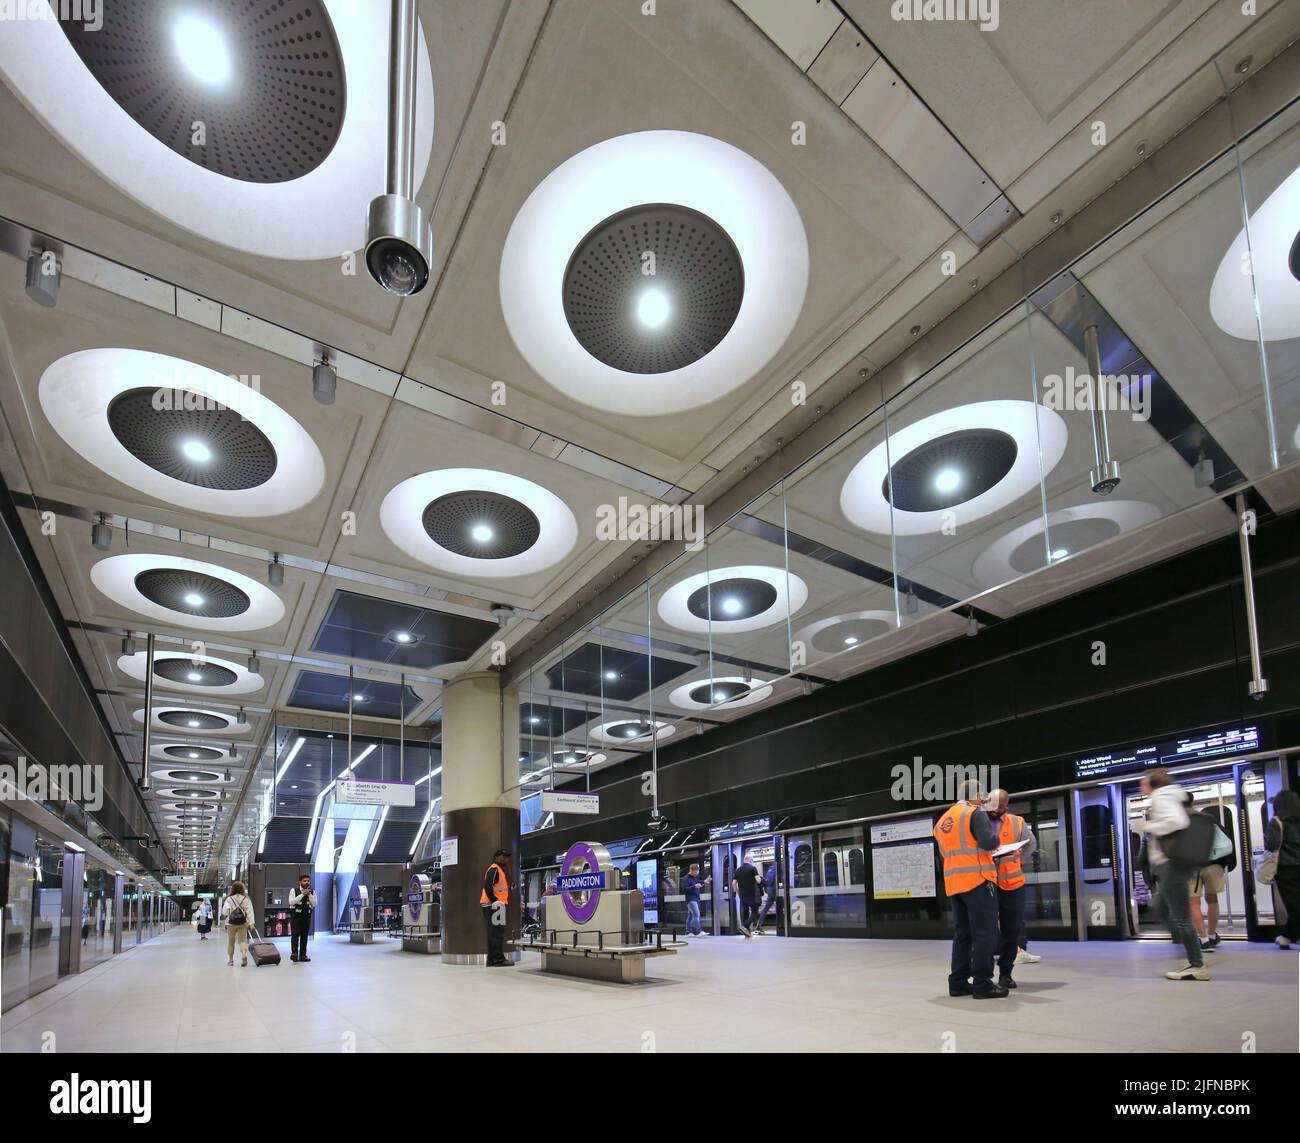 Londra, Regno Unito. Stazione di Paddington sulla rete metropolitana Elizabeth Line (crossrail) di recente apertura. A livello di piattaforma, mostra treni e scale mobili. Foto Stock